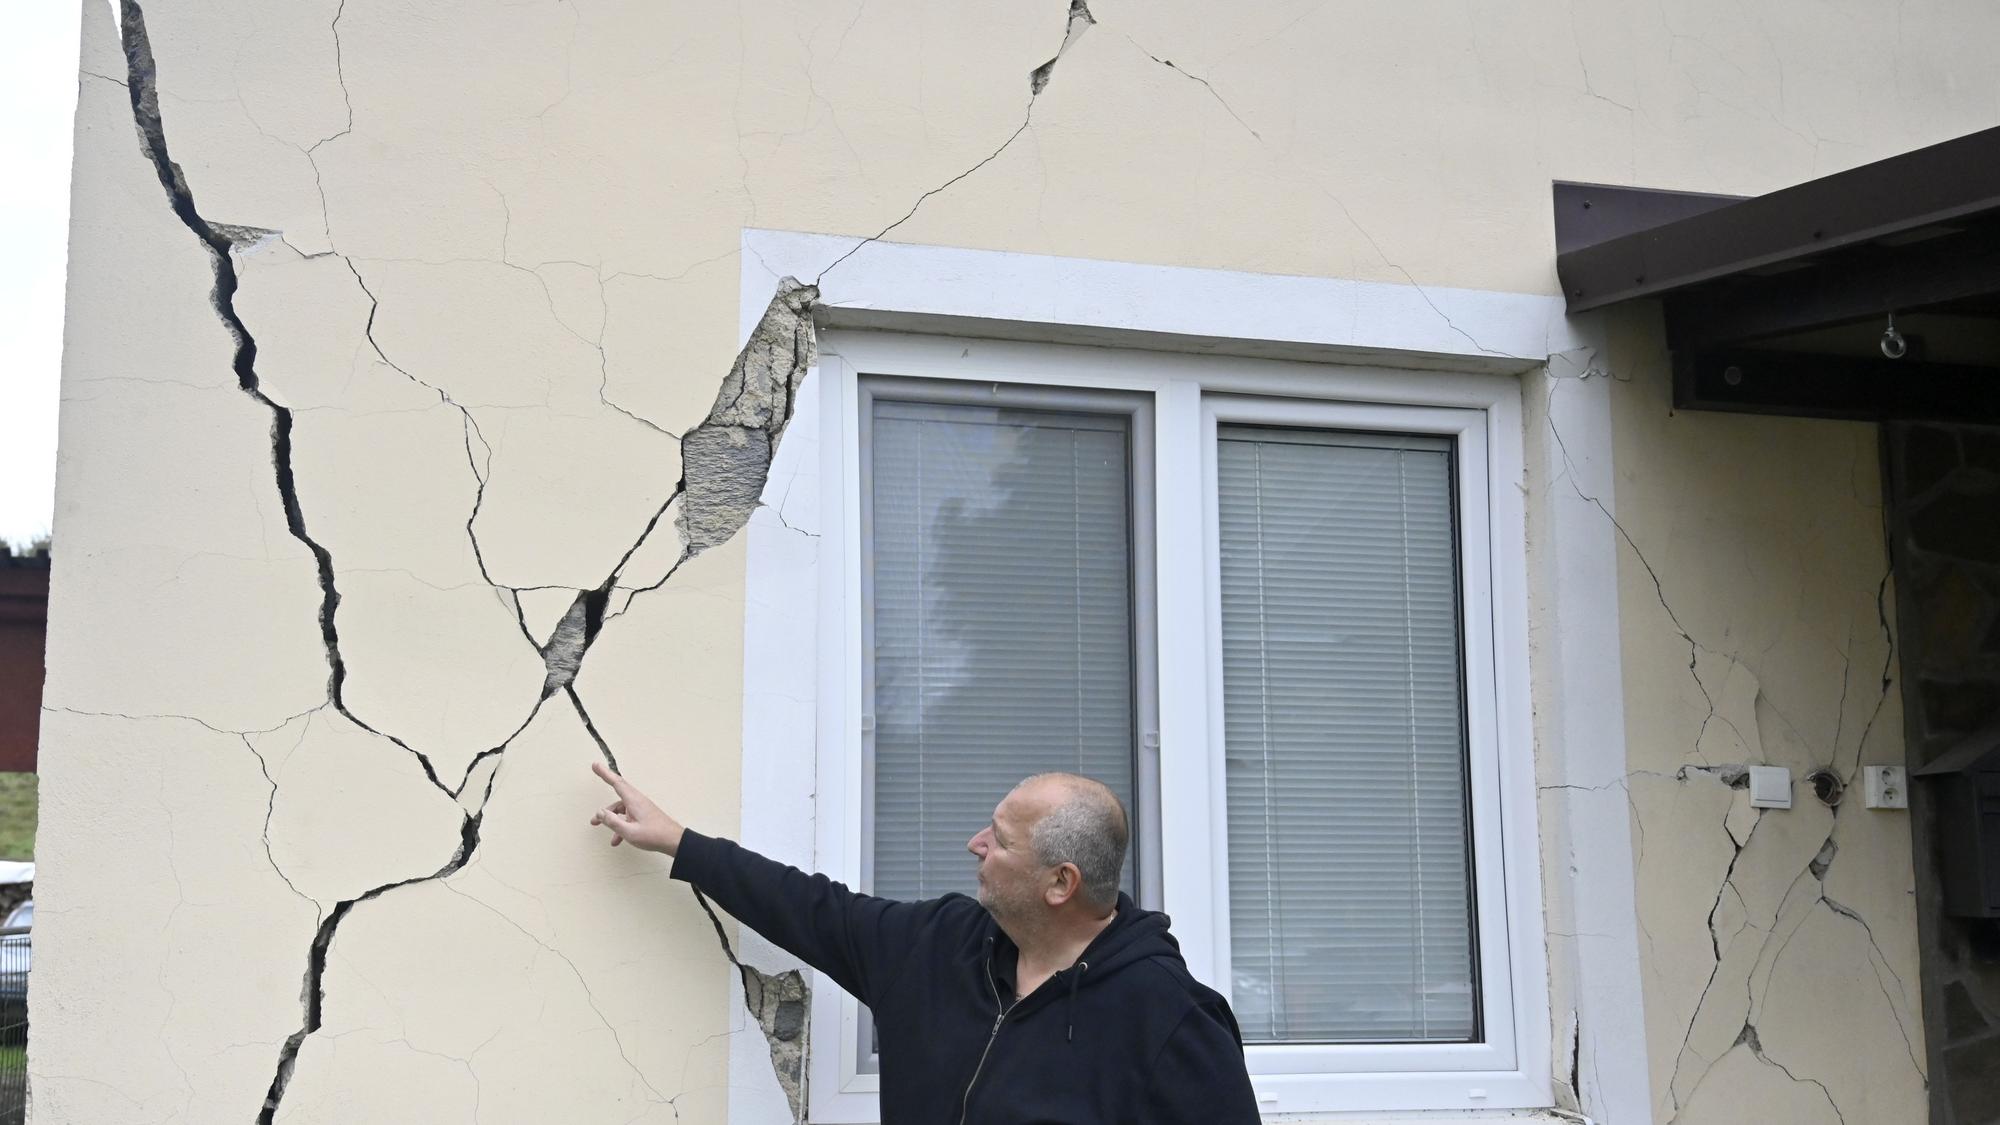  Vlani bolo sedem zemetrasení, z toho šesť s epicentrom na Slovensku